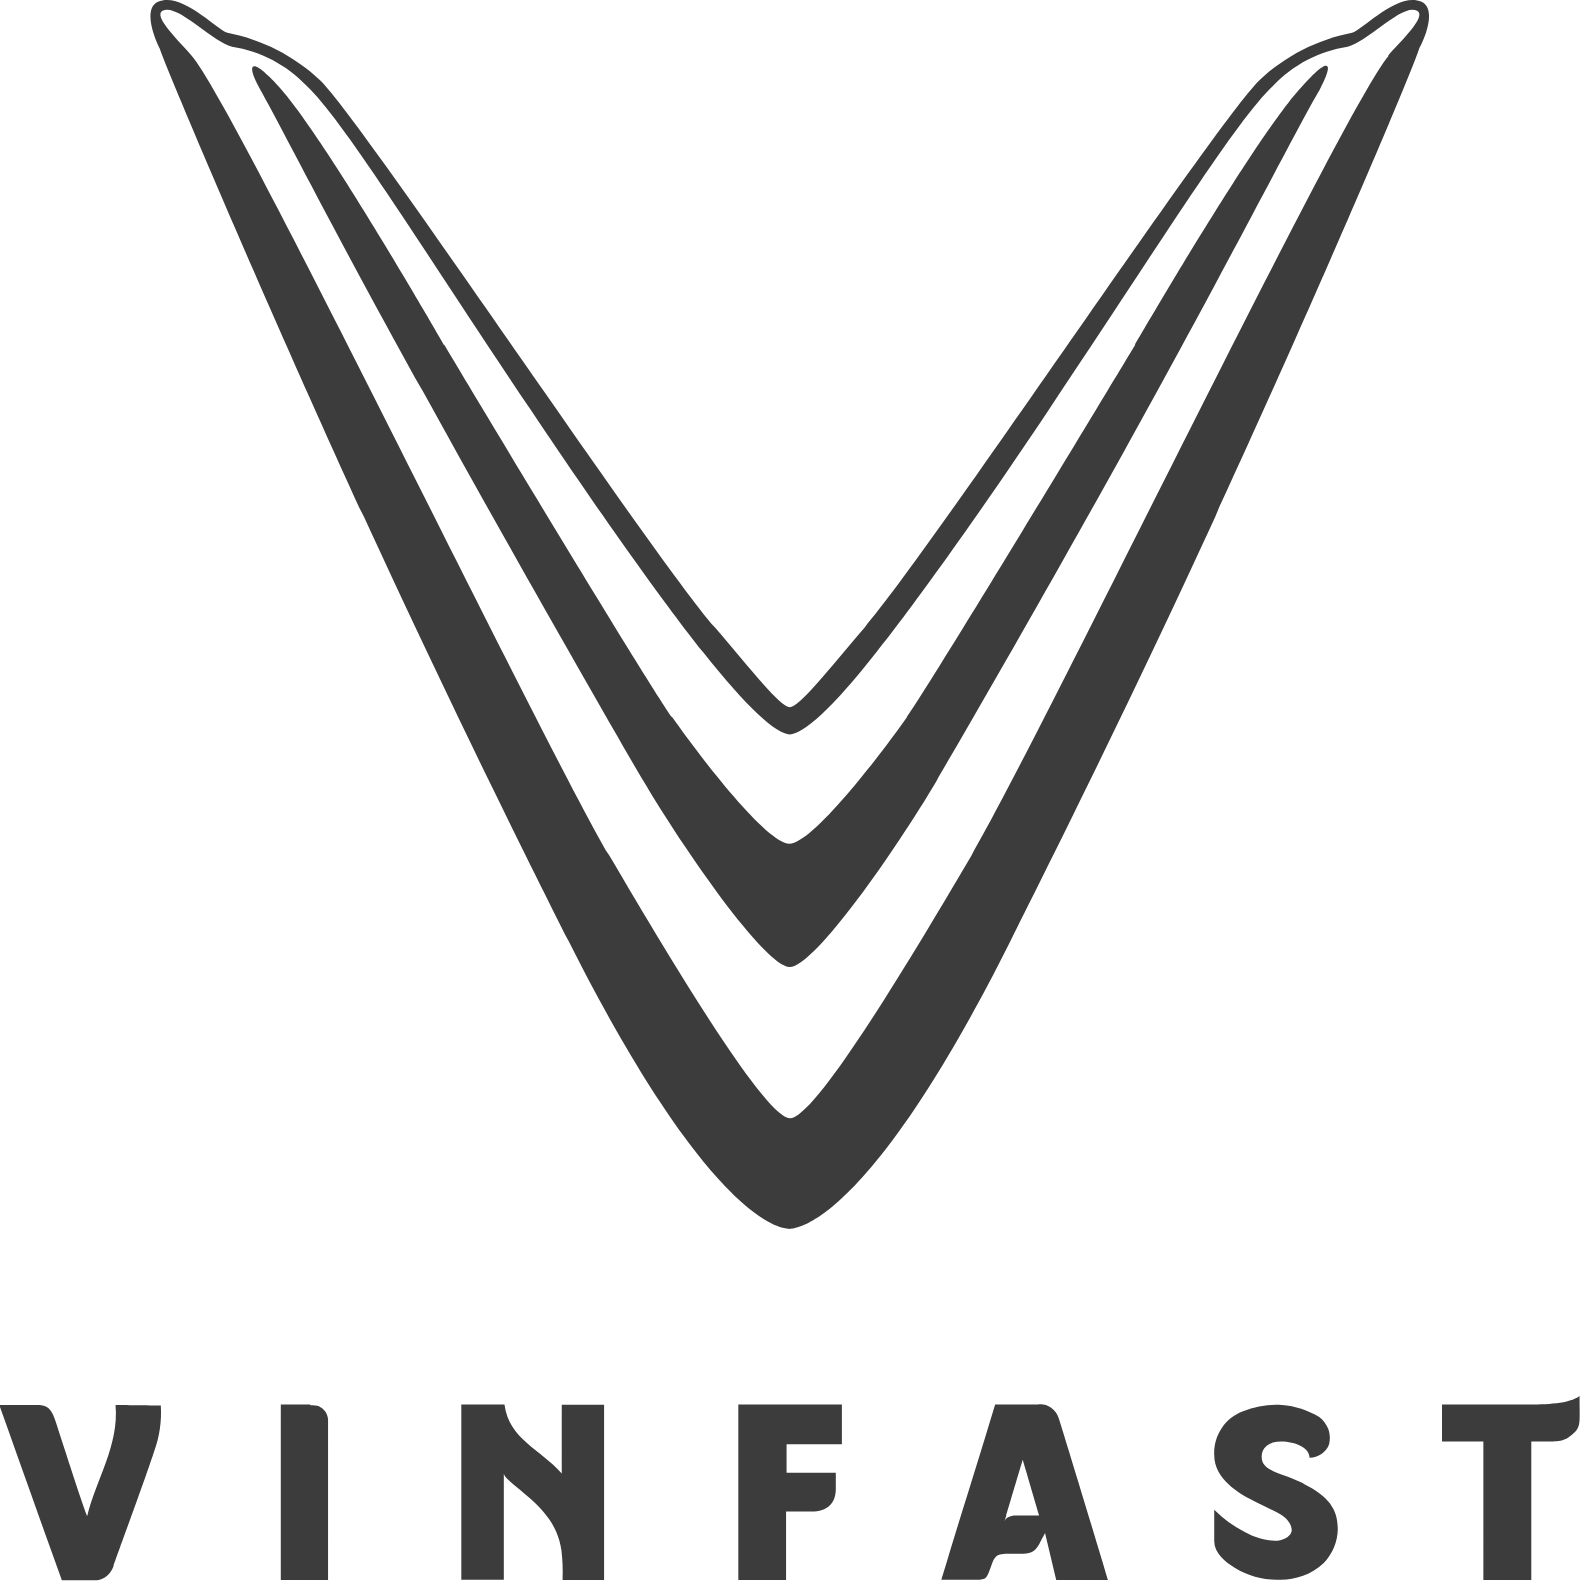 VinFast Auto logo large (transparent PNG)